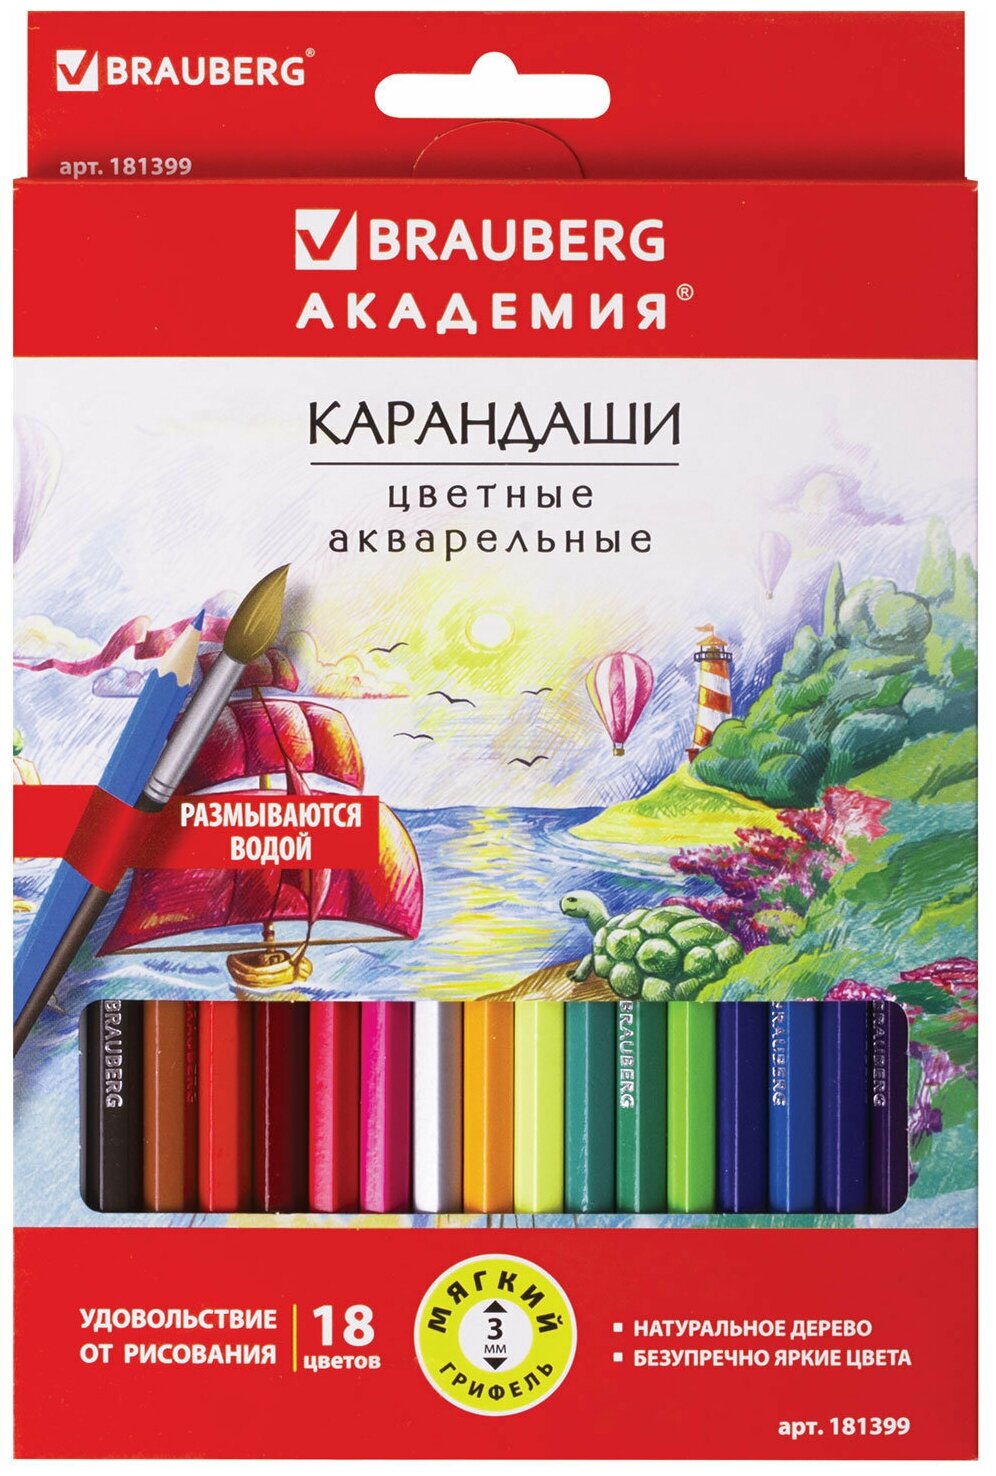 Карандаши акварельные цветные художественные для рисования "Академия", набор из 18 цветов, заточенные, шестигранные, Brauberg